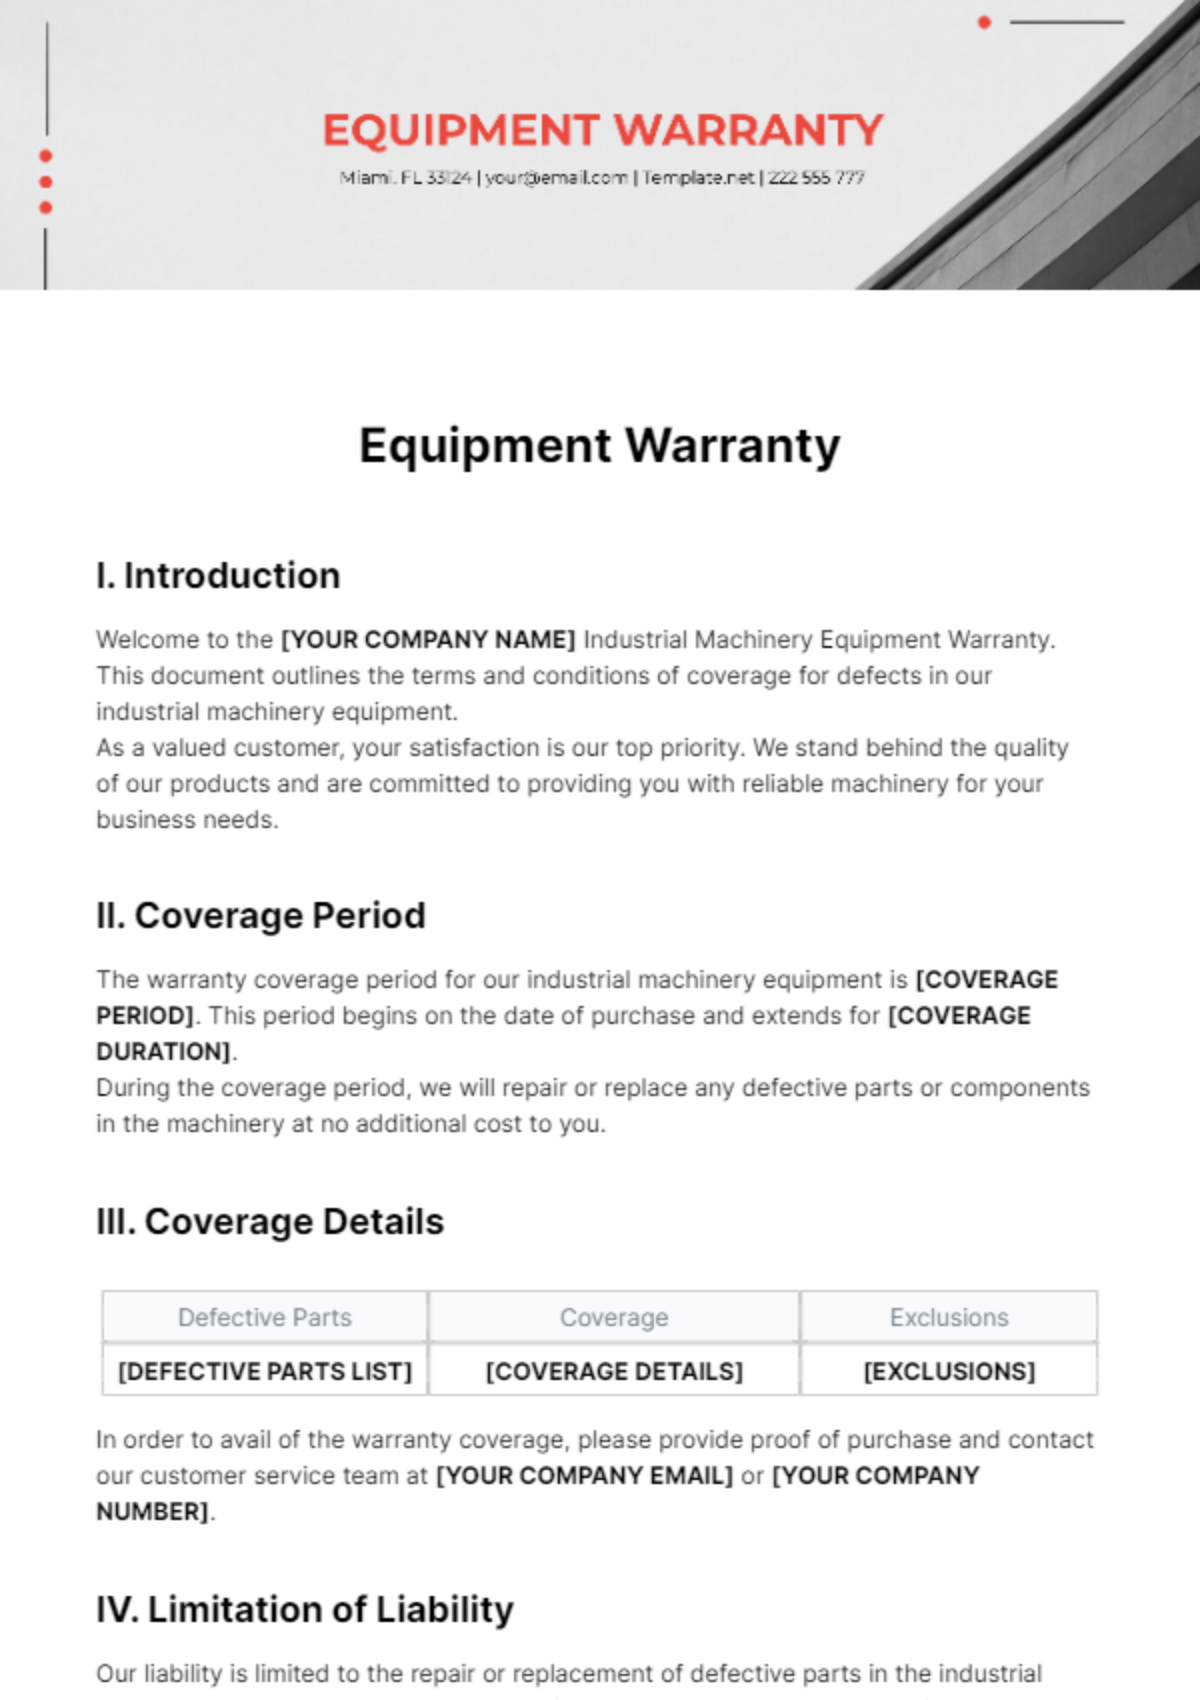 Equipment Warranty Template